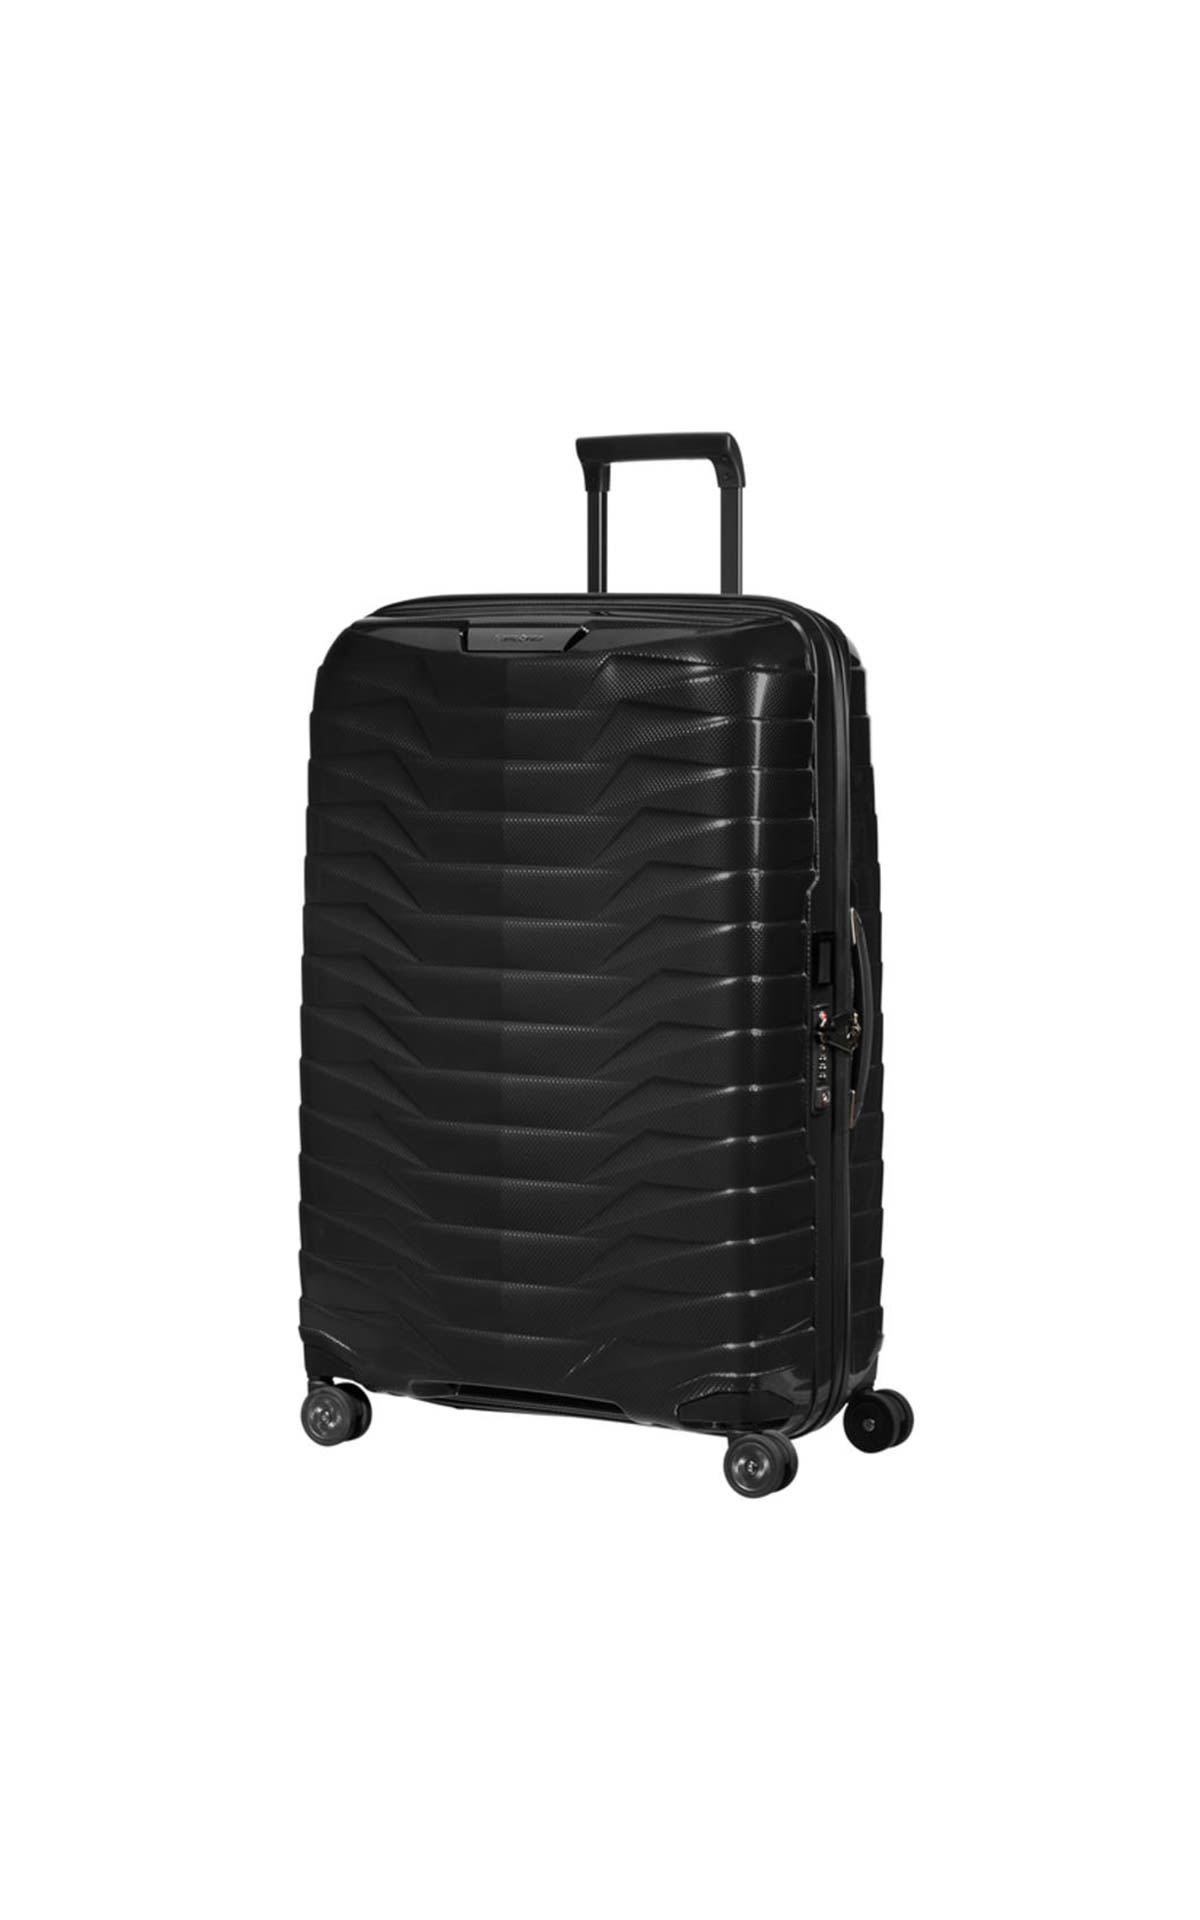 Samsonite Prox 69/25 black suitcase